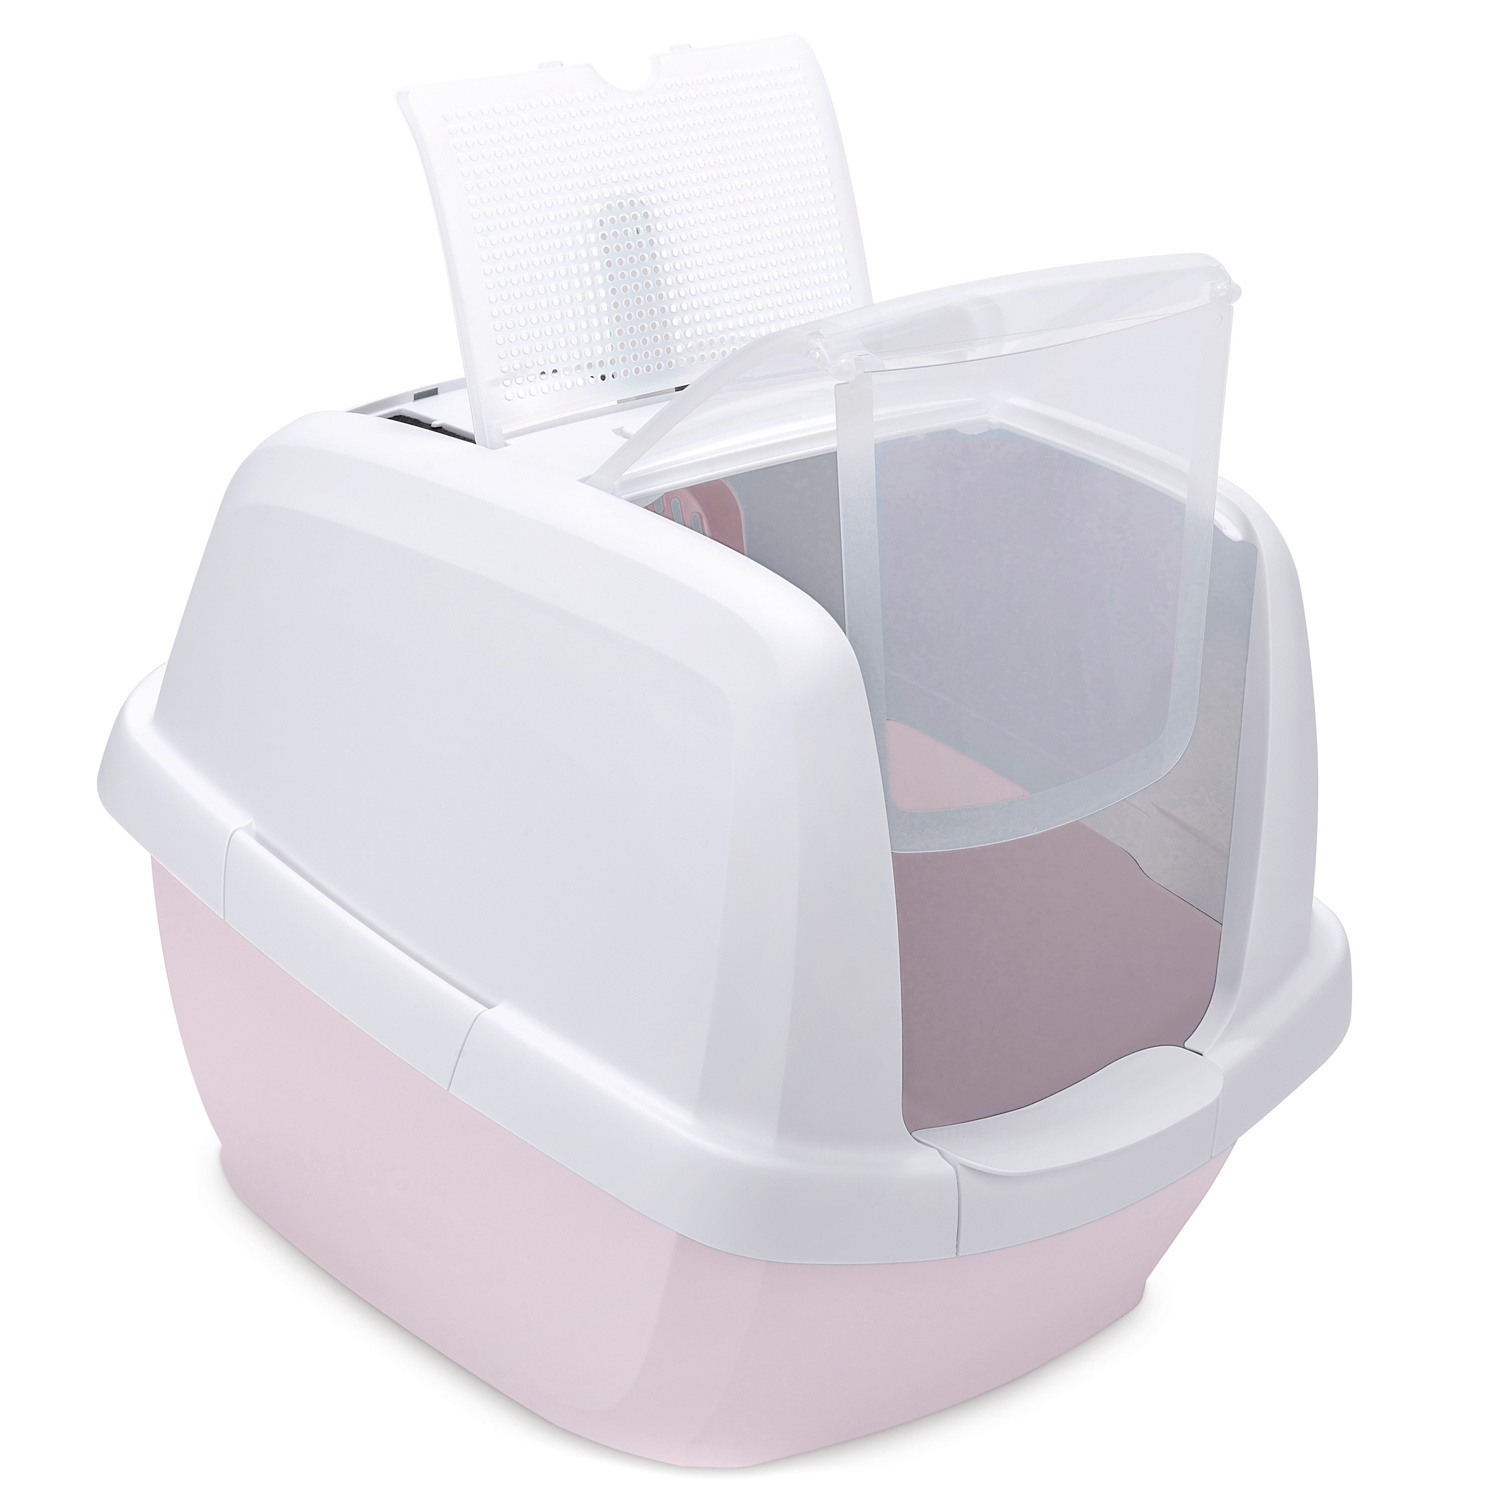 IMAC IMAC био-туалет для кошек , белый/нежно-розовый (2,85 кг) imac imac био туалет для кошек белый бежевый 2 85 кг